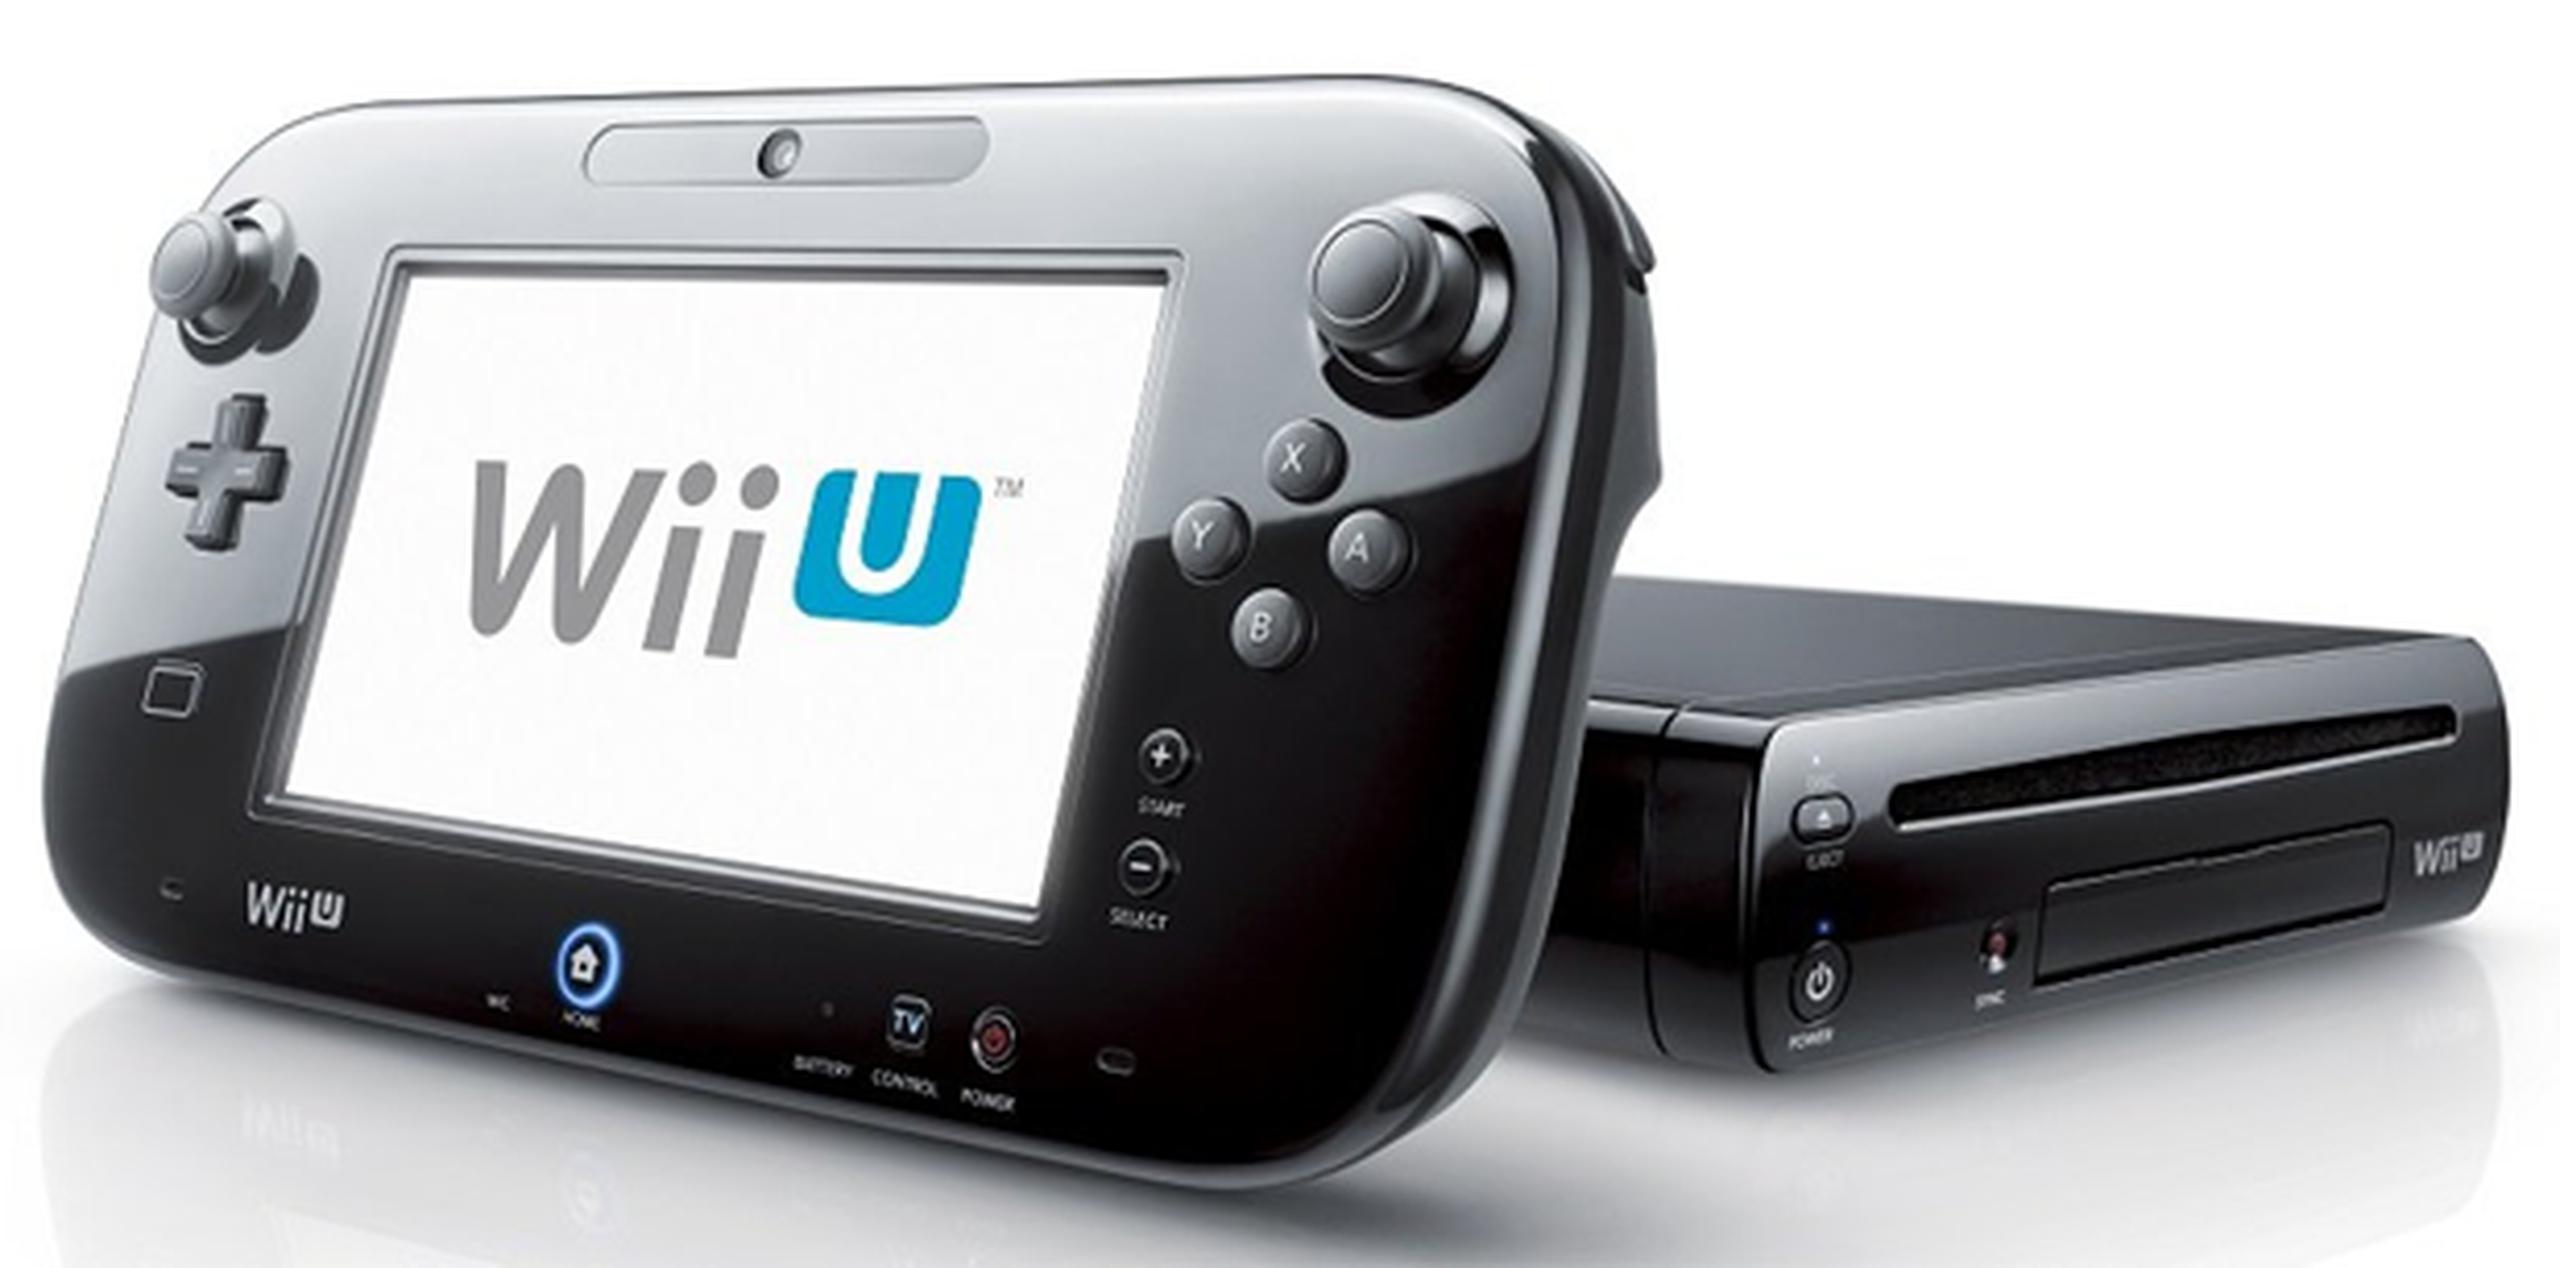 La compañía sigue optimista y dijo que espera vender 3.6 millones de consolas Wii U durante el año fiscal que concluye en marzo de 2015 impulsada por el lanzamiento de nuevos juegos para éstas como "Mario Kart 8" y "Super Smash Bros".